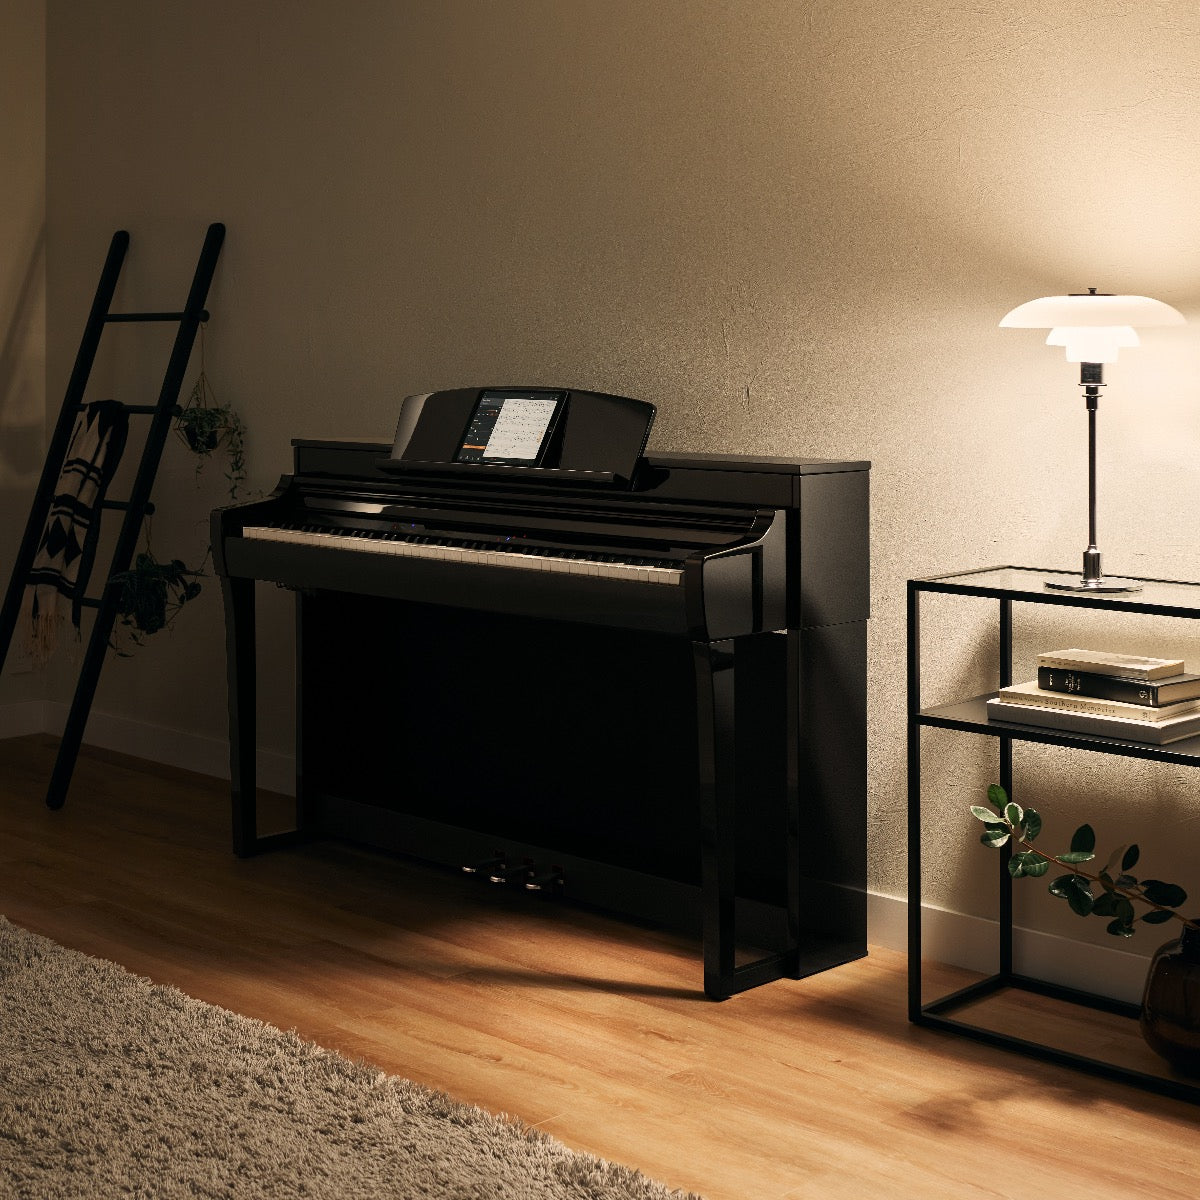 Yamaha Clavinova CSP255PE Digital Piano with Bench - Polished Ebony, View 1